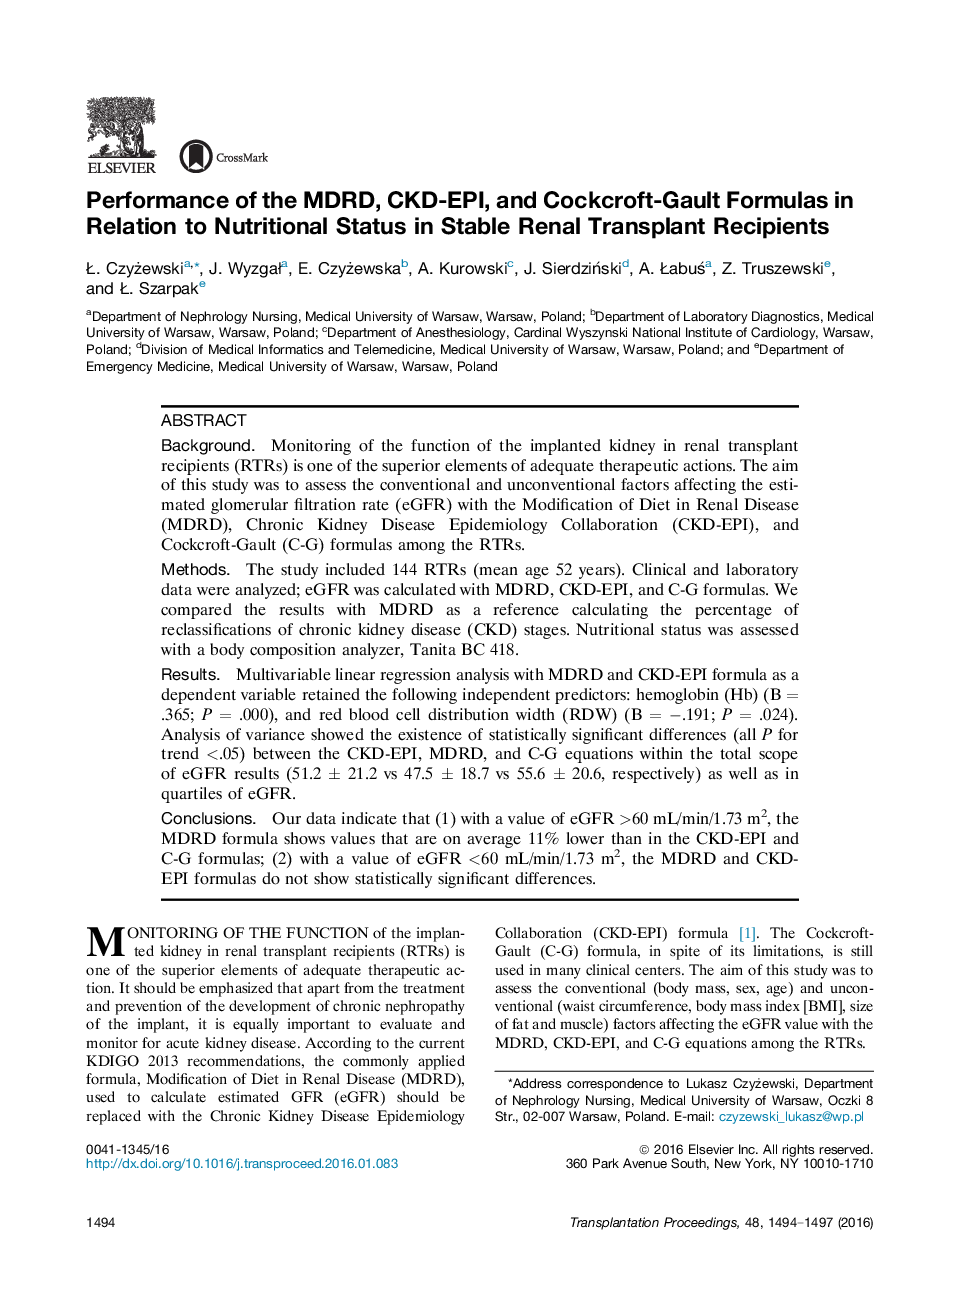 عملکرد MDRD، CKD-EPI، و فرمول Cockcroft-Gault در ارتباط با وضعیت تغذیه در گیرندگان پیوند پایدار کلیه